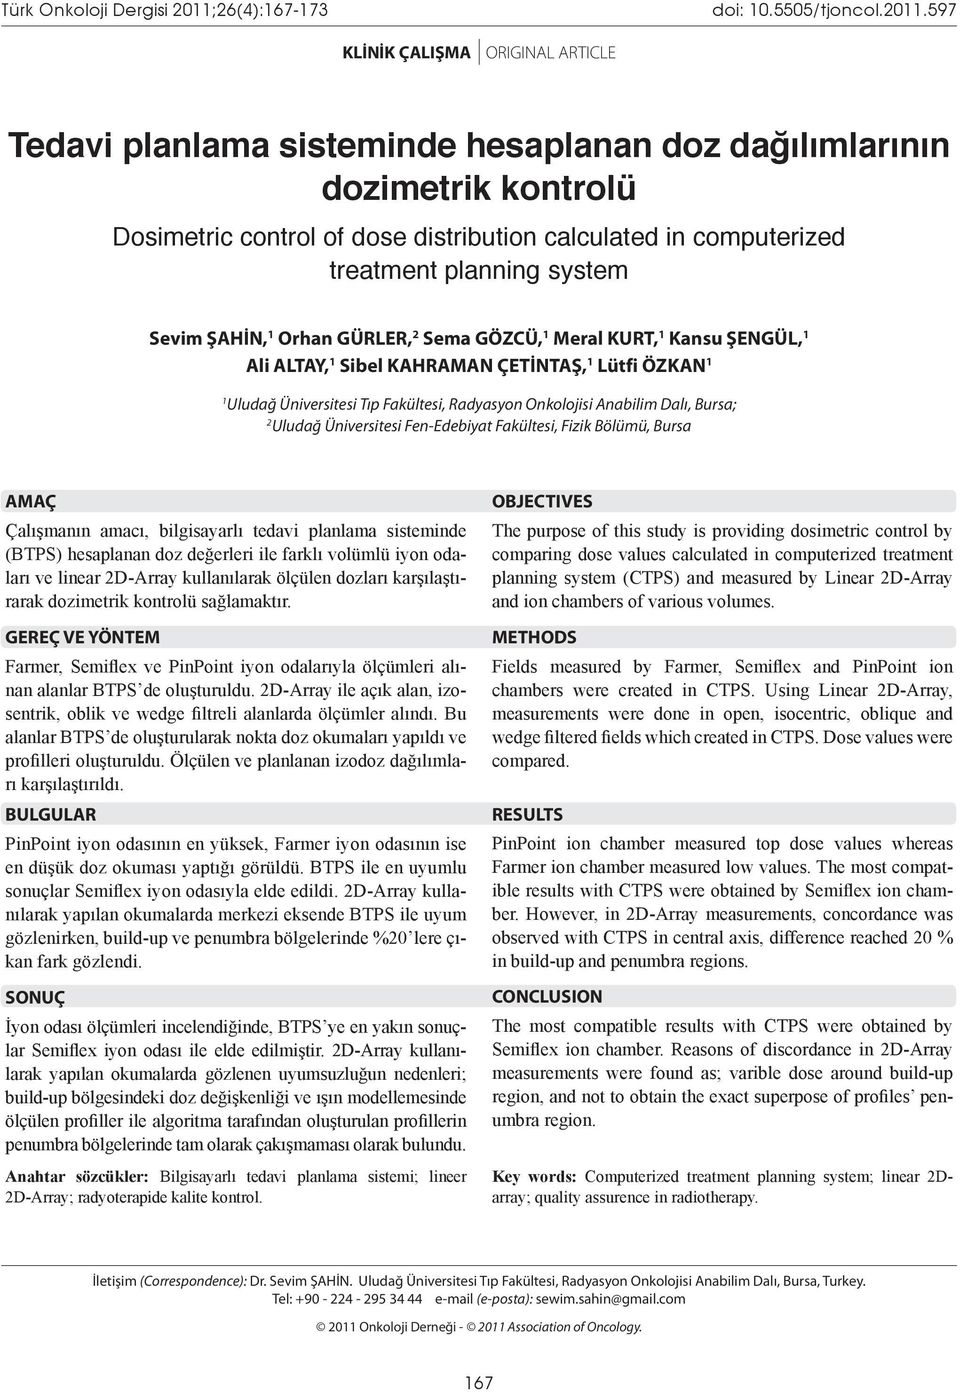 597 KLİNİK ÇALIŞMA ORIGINAL ARTICLE Tedavi planlama sisteminde hesaplanan doz dağılımlarının dozimetrik kontrolü Dosimetric control of dose distribution calculated in computerized treatment planning